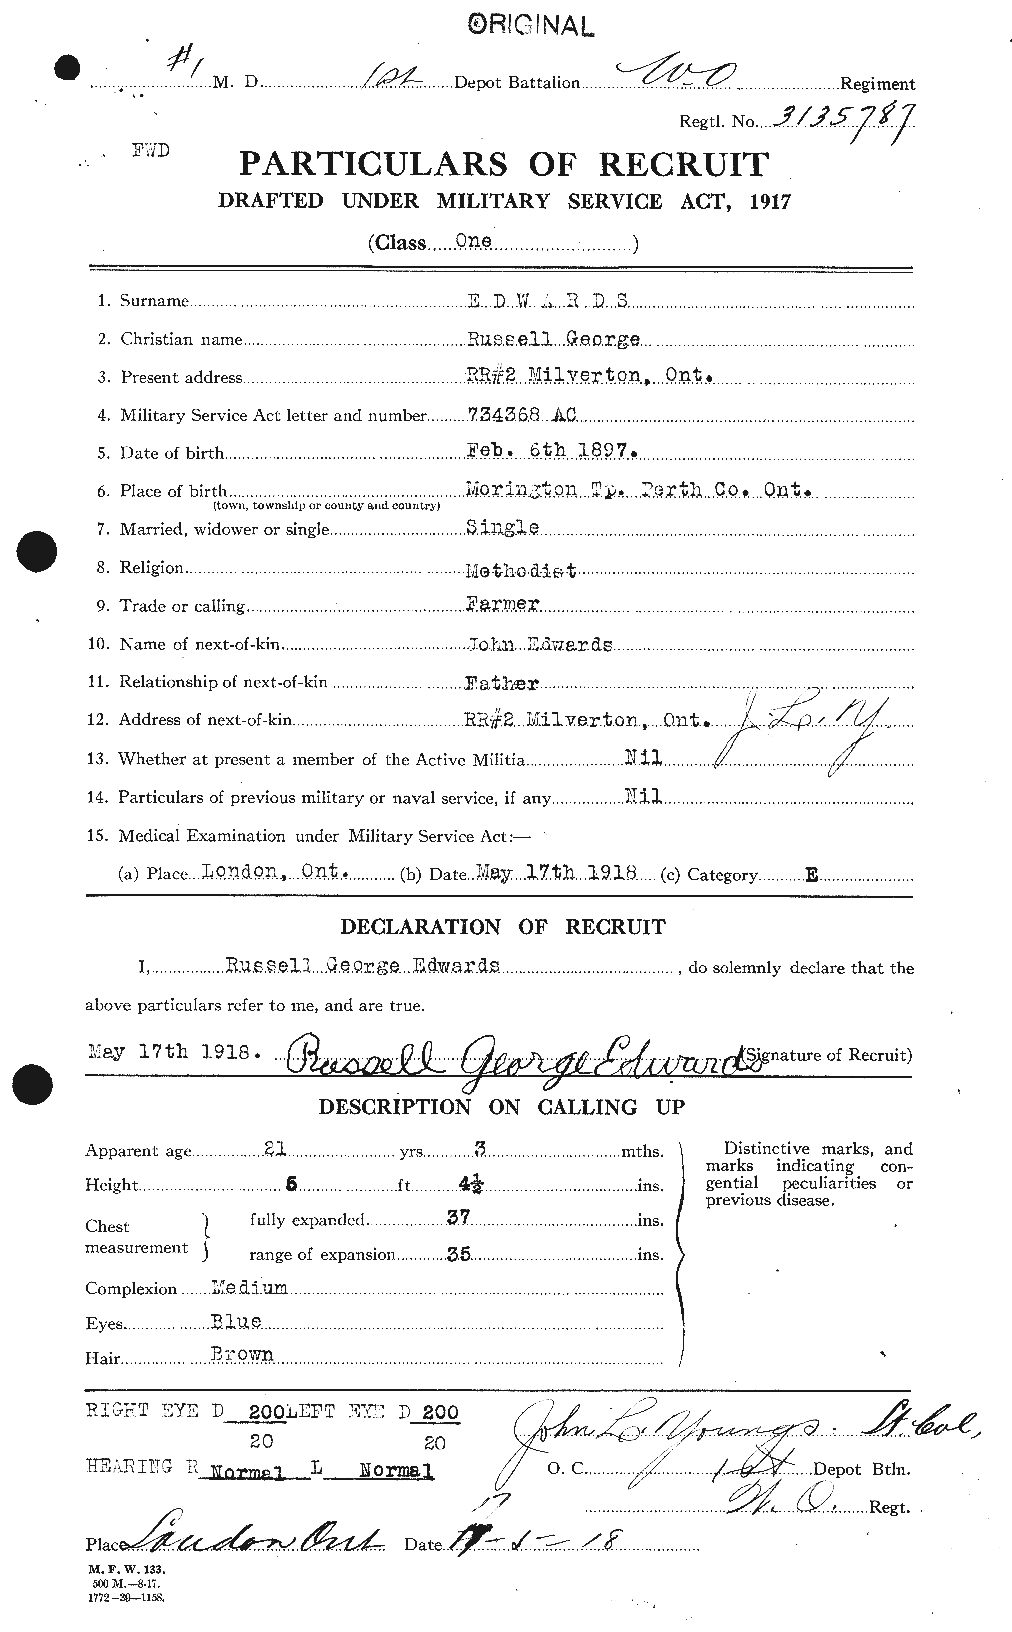 Dossiers du Personnel de la Première Guerre mondiale - CEC 310304a